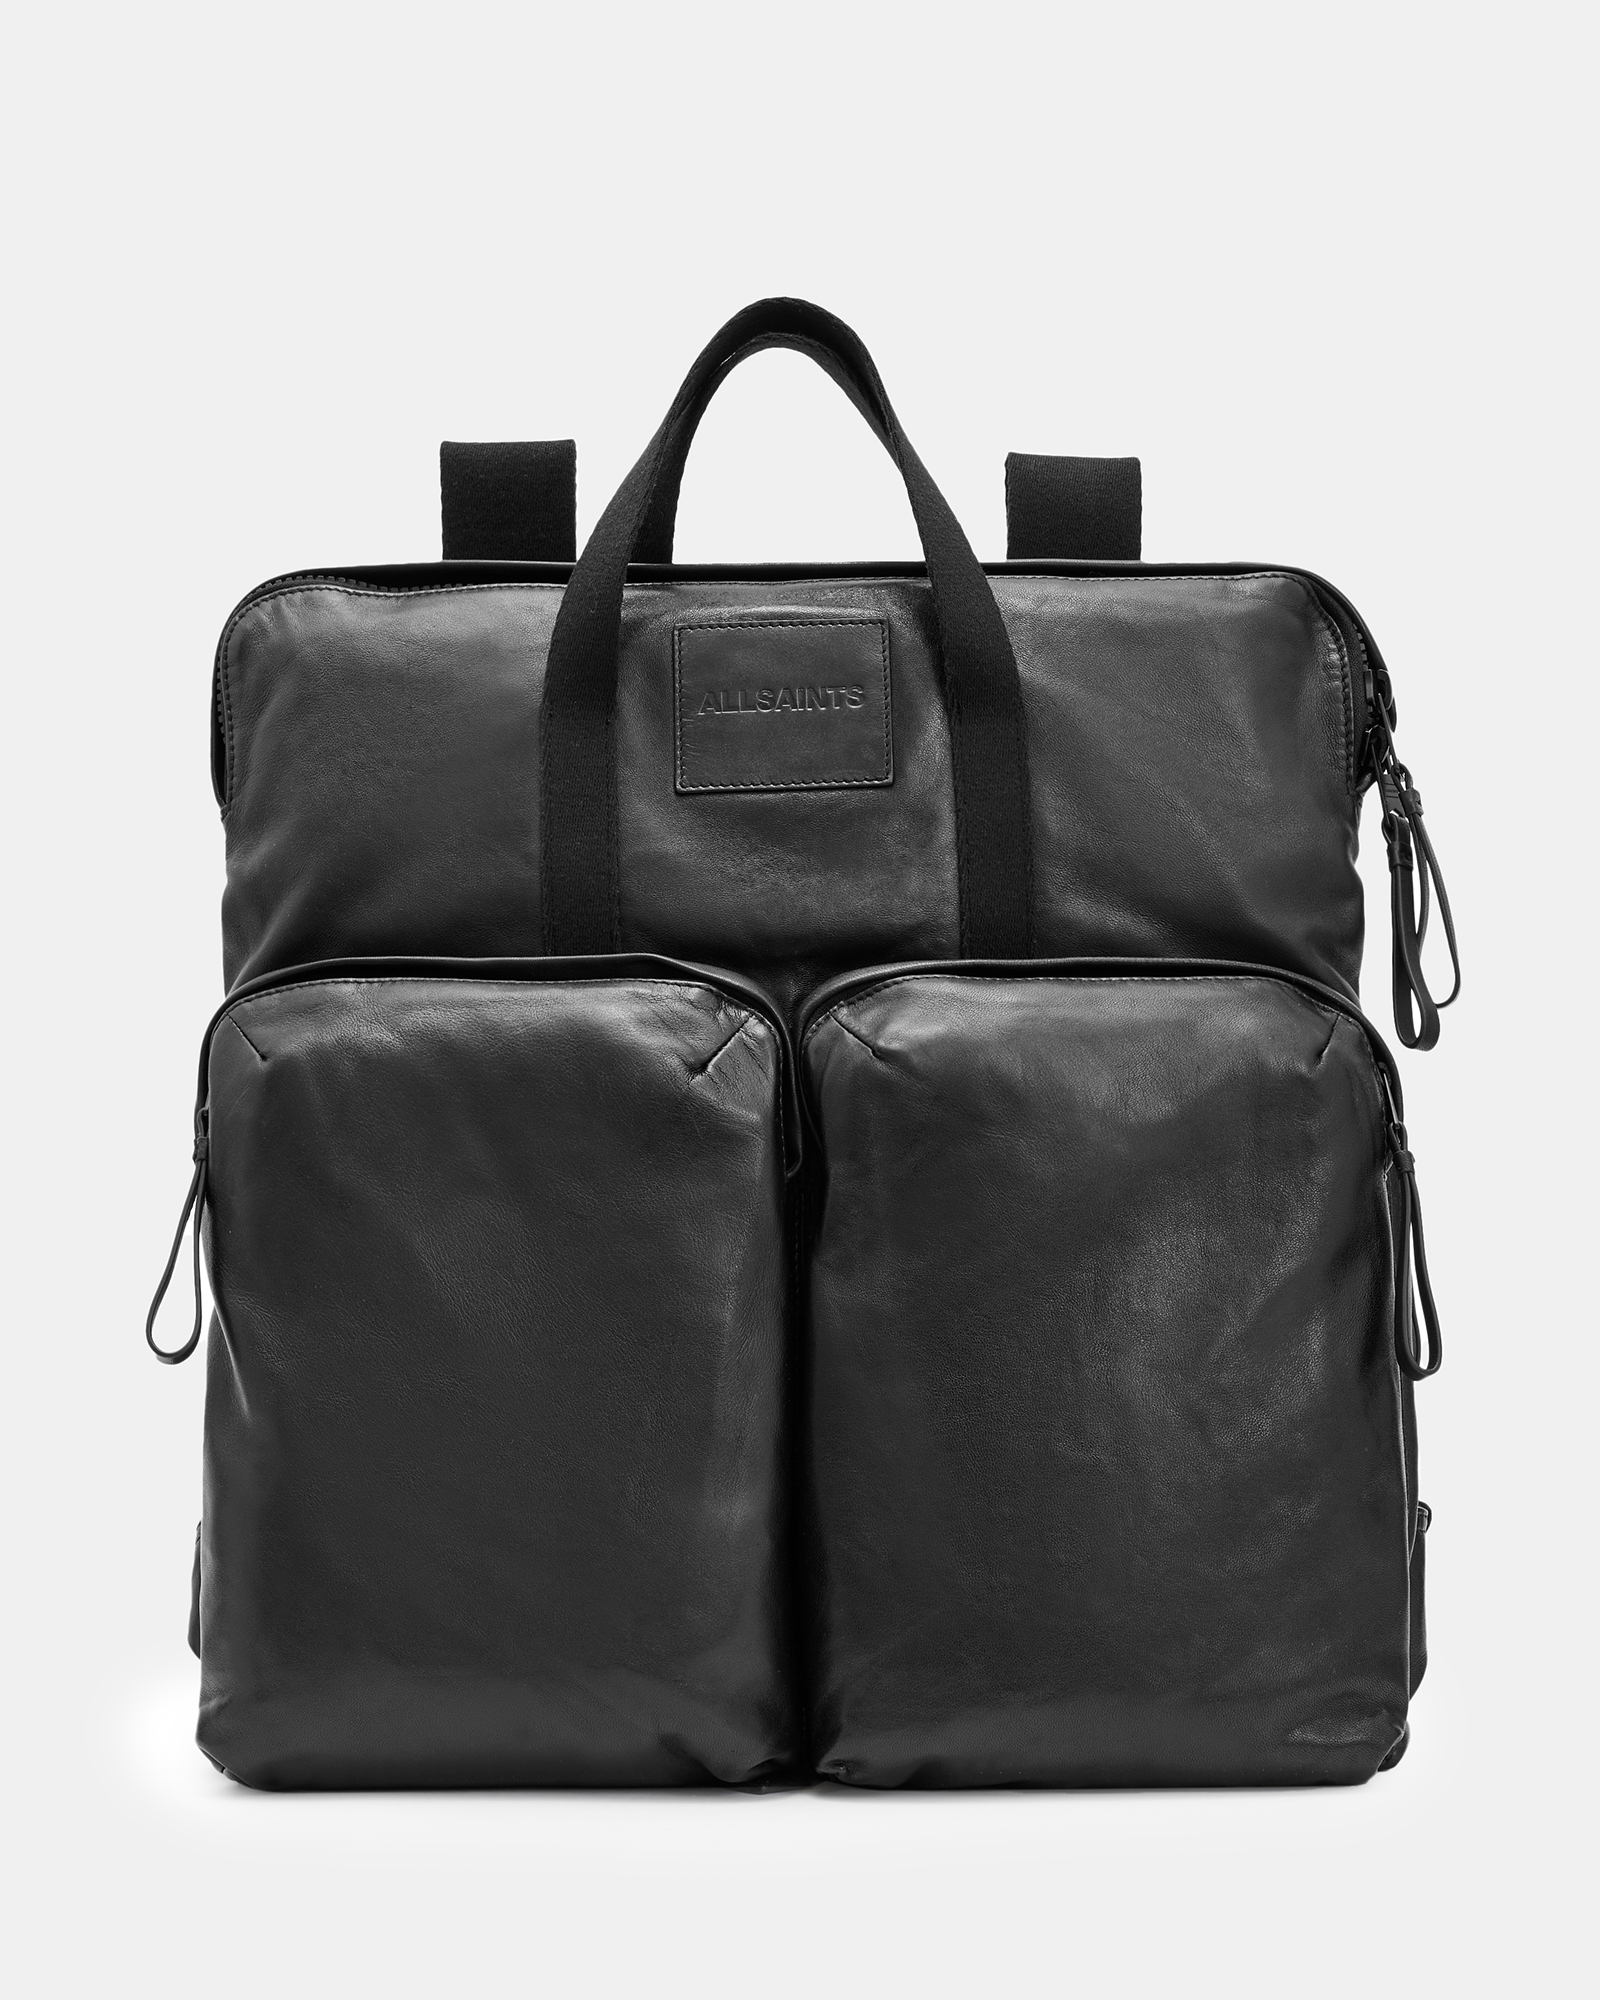 AllSaints Force Leather Backpack,, Black